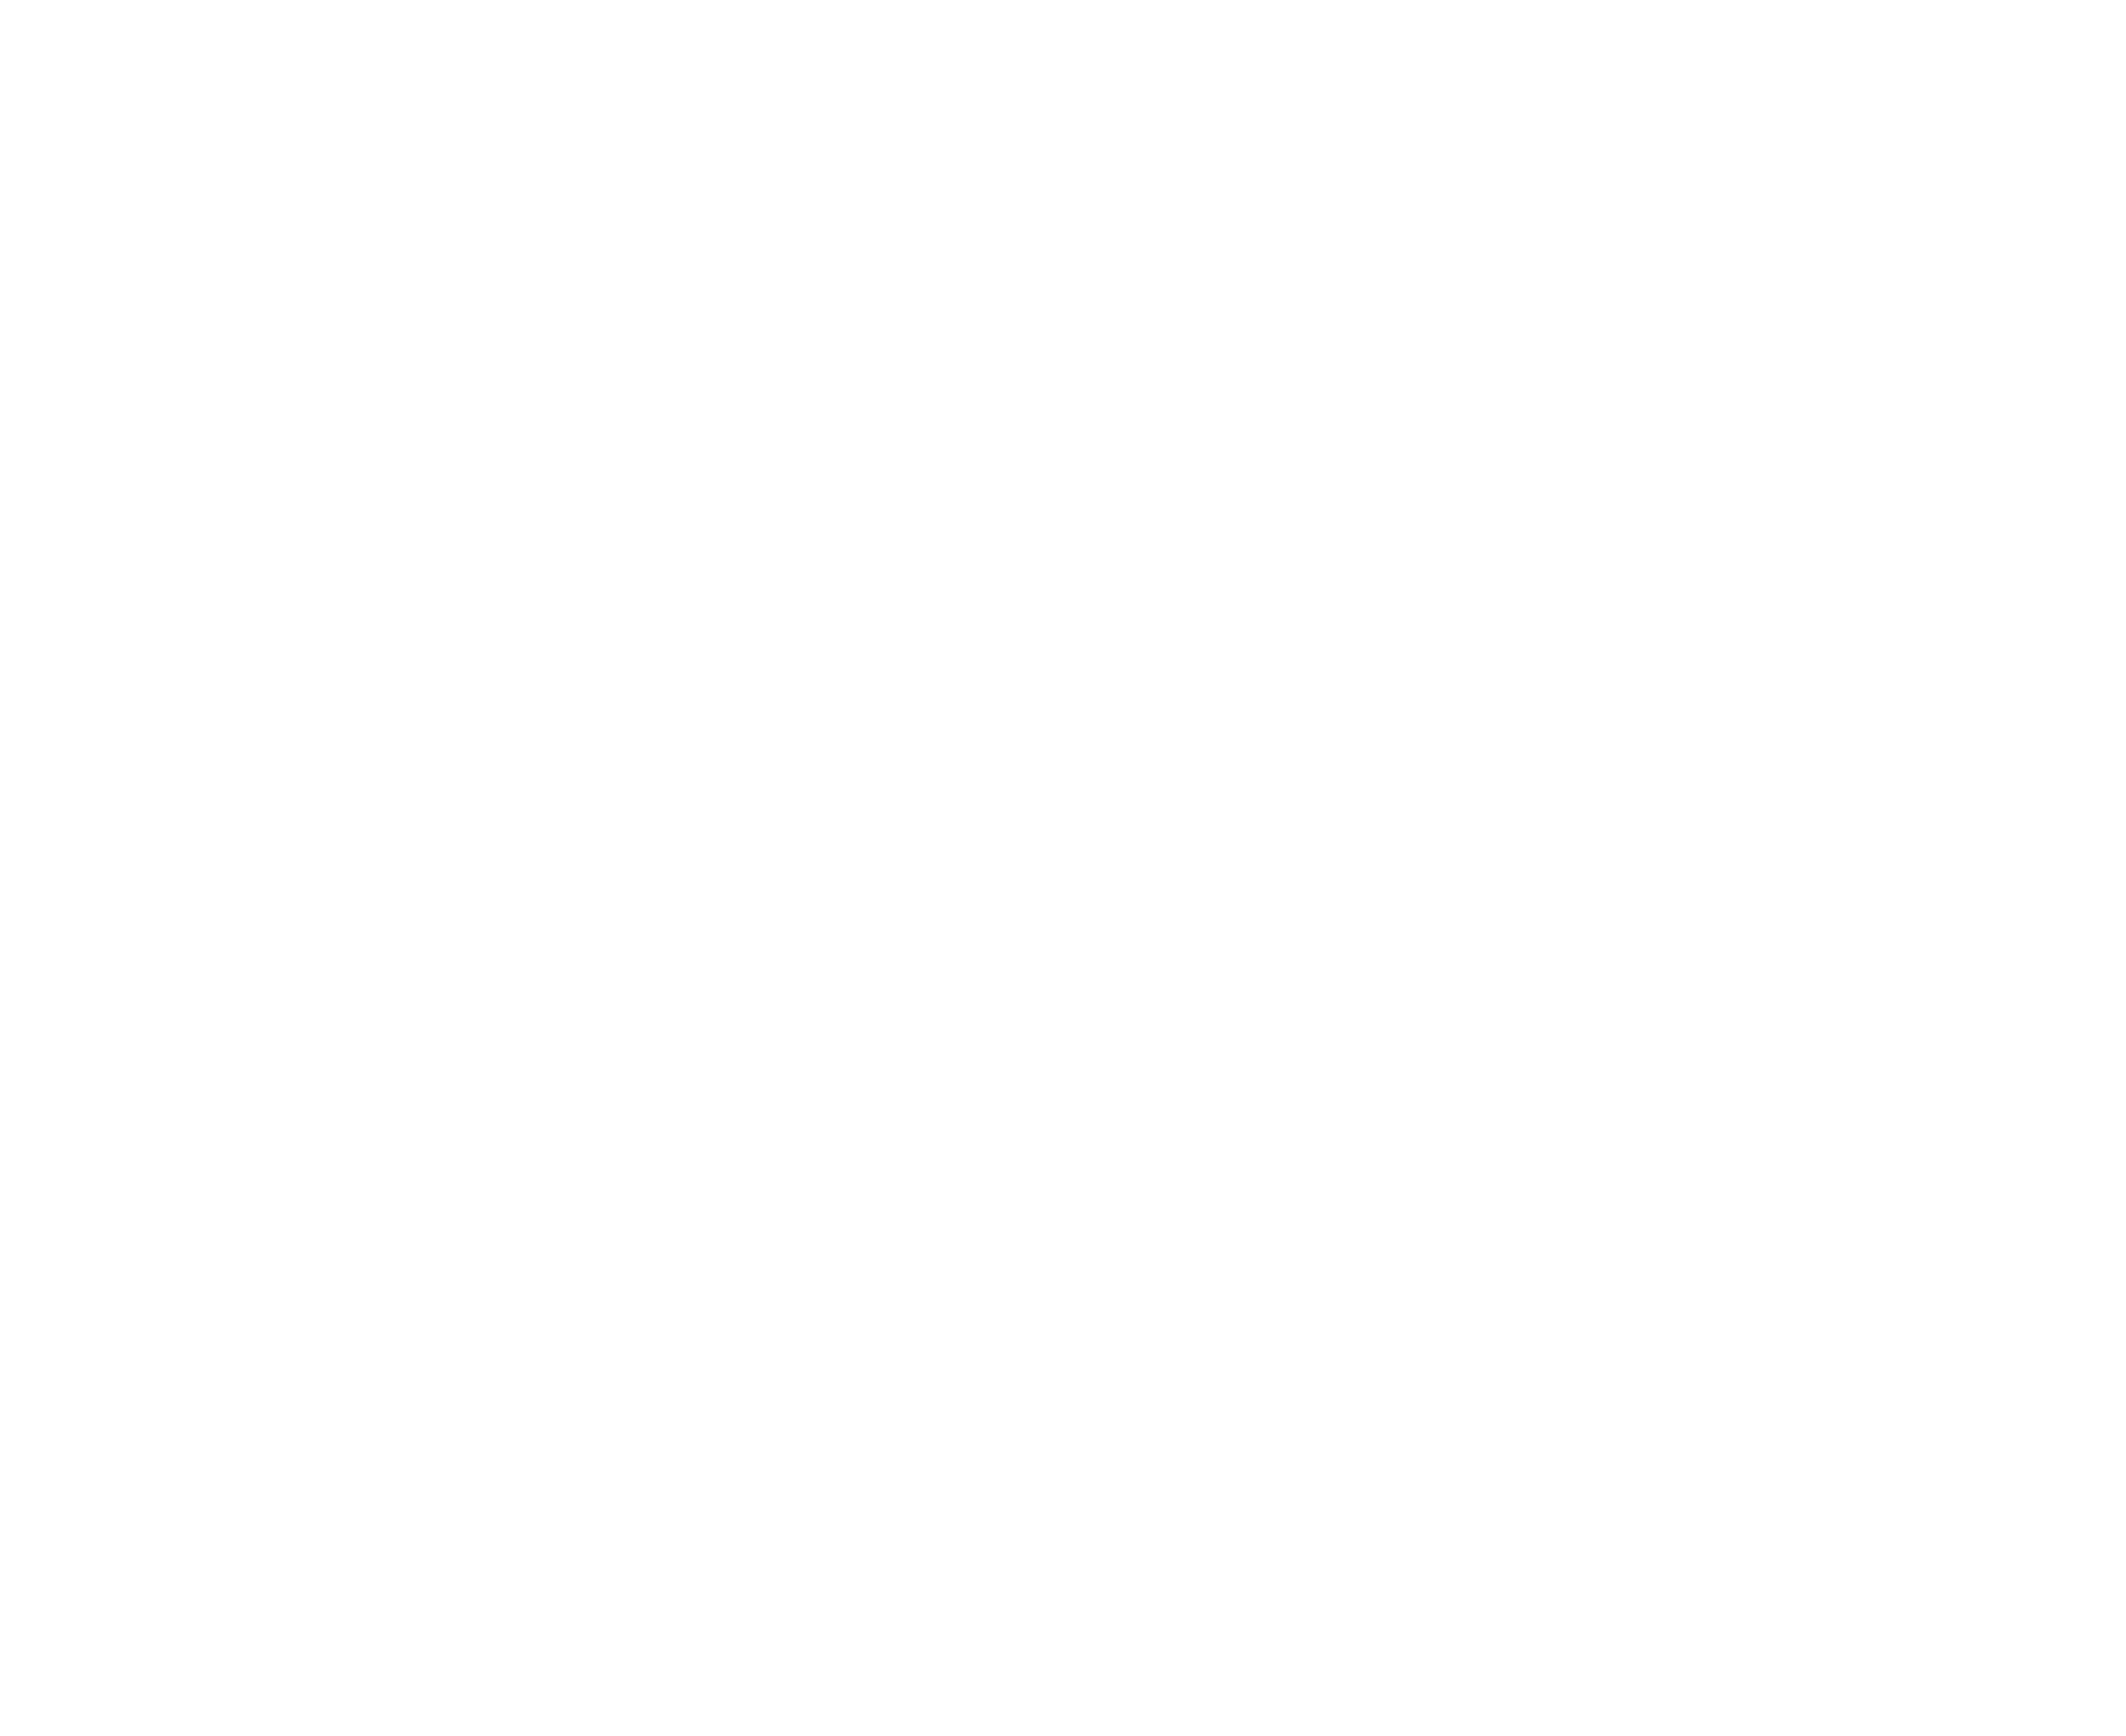 Creatve Design Office